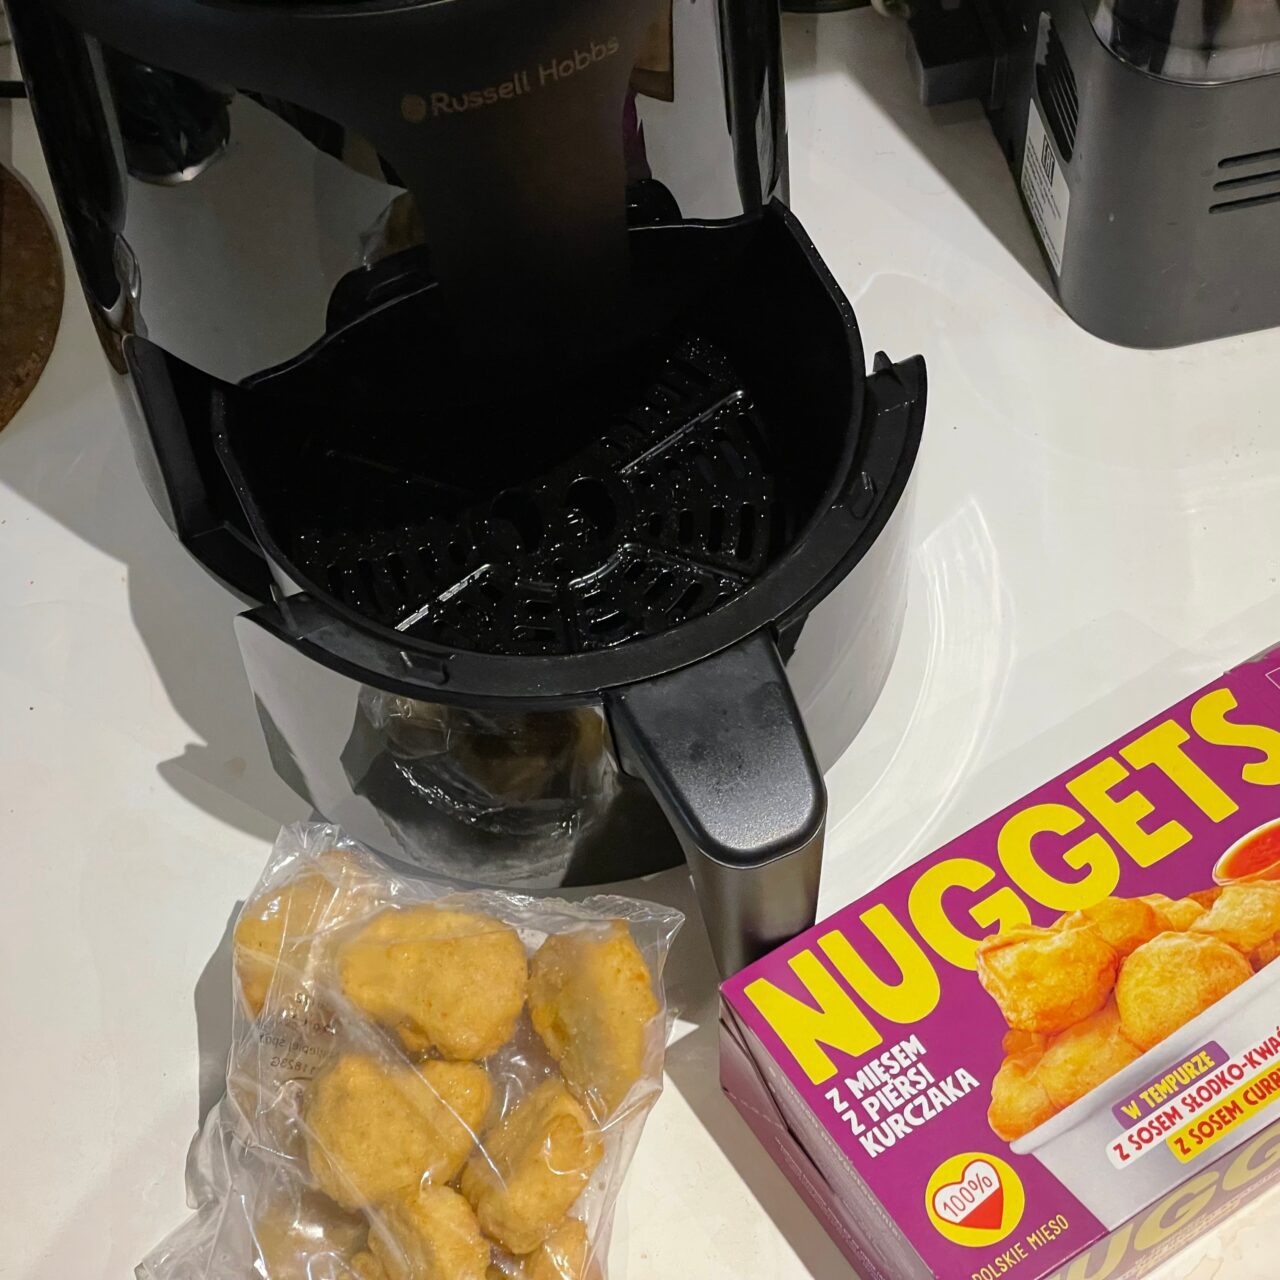 Czarny ekspres do kawy marki Russell Hobbs z otwartą komorą na filtr, obok opakowanie nuggetsów z kurczaka oraz plastikowy worek z widocznymi kilkoma nuggetsami.